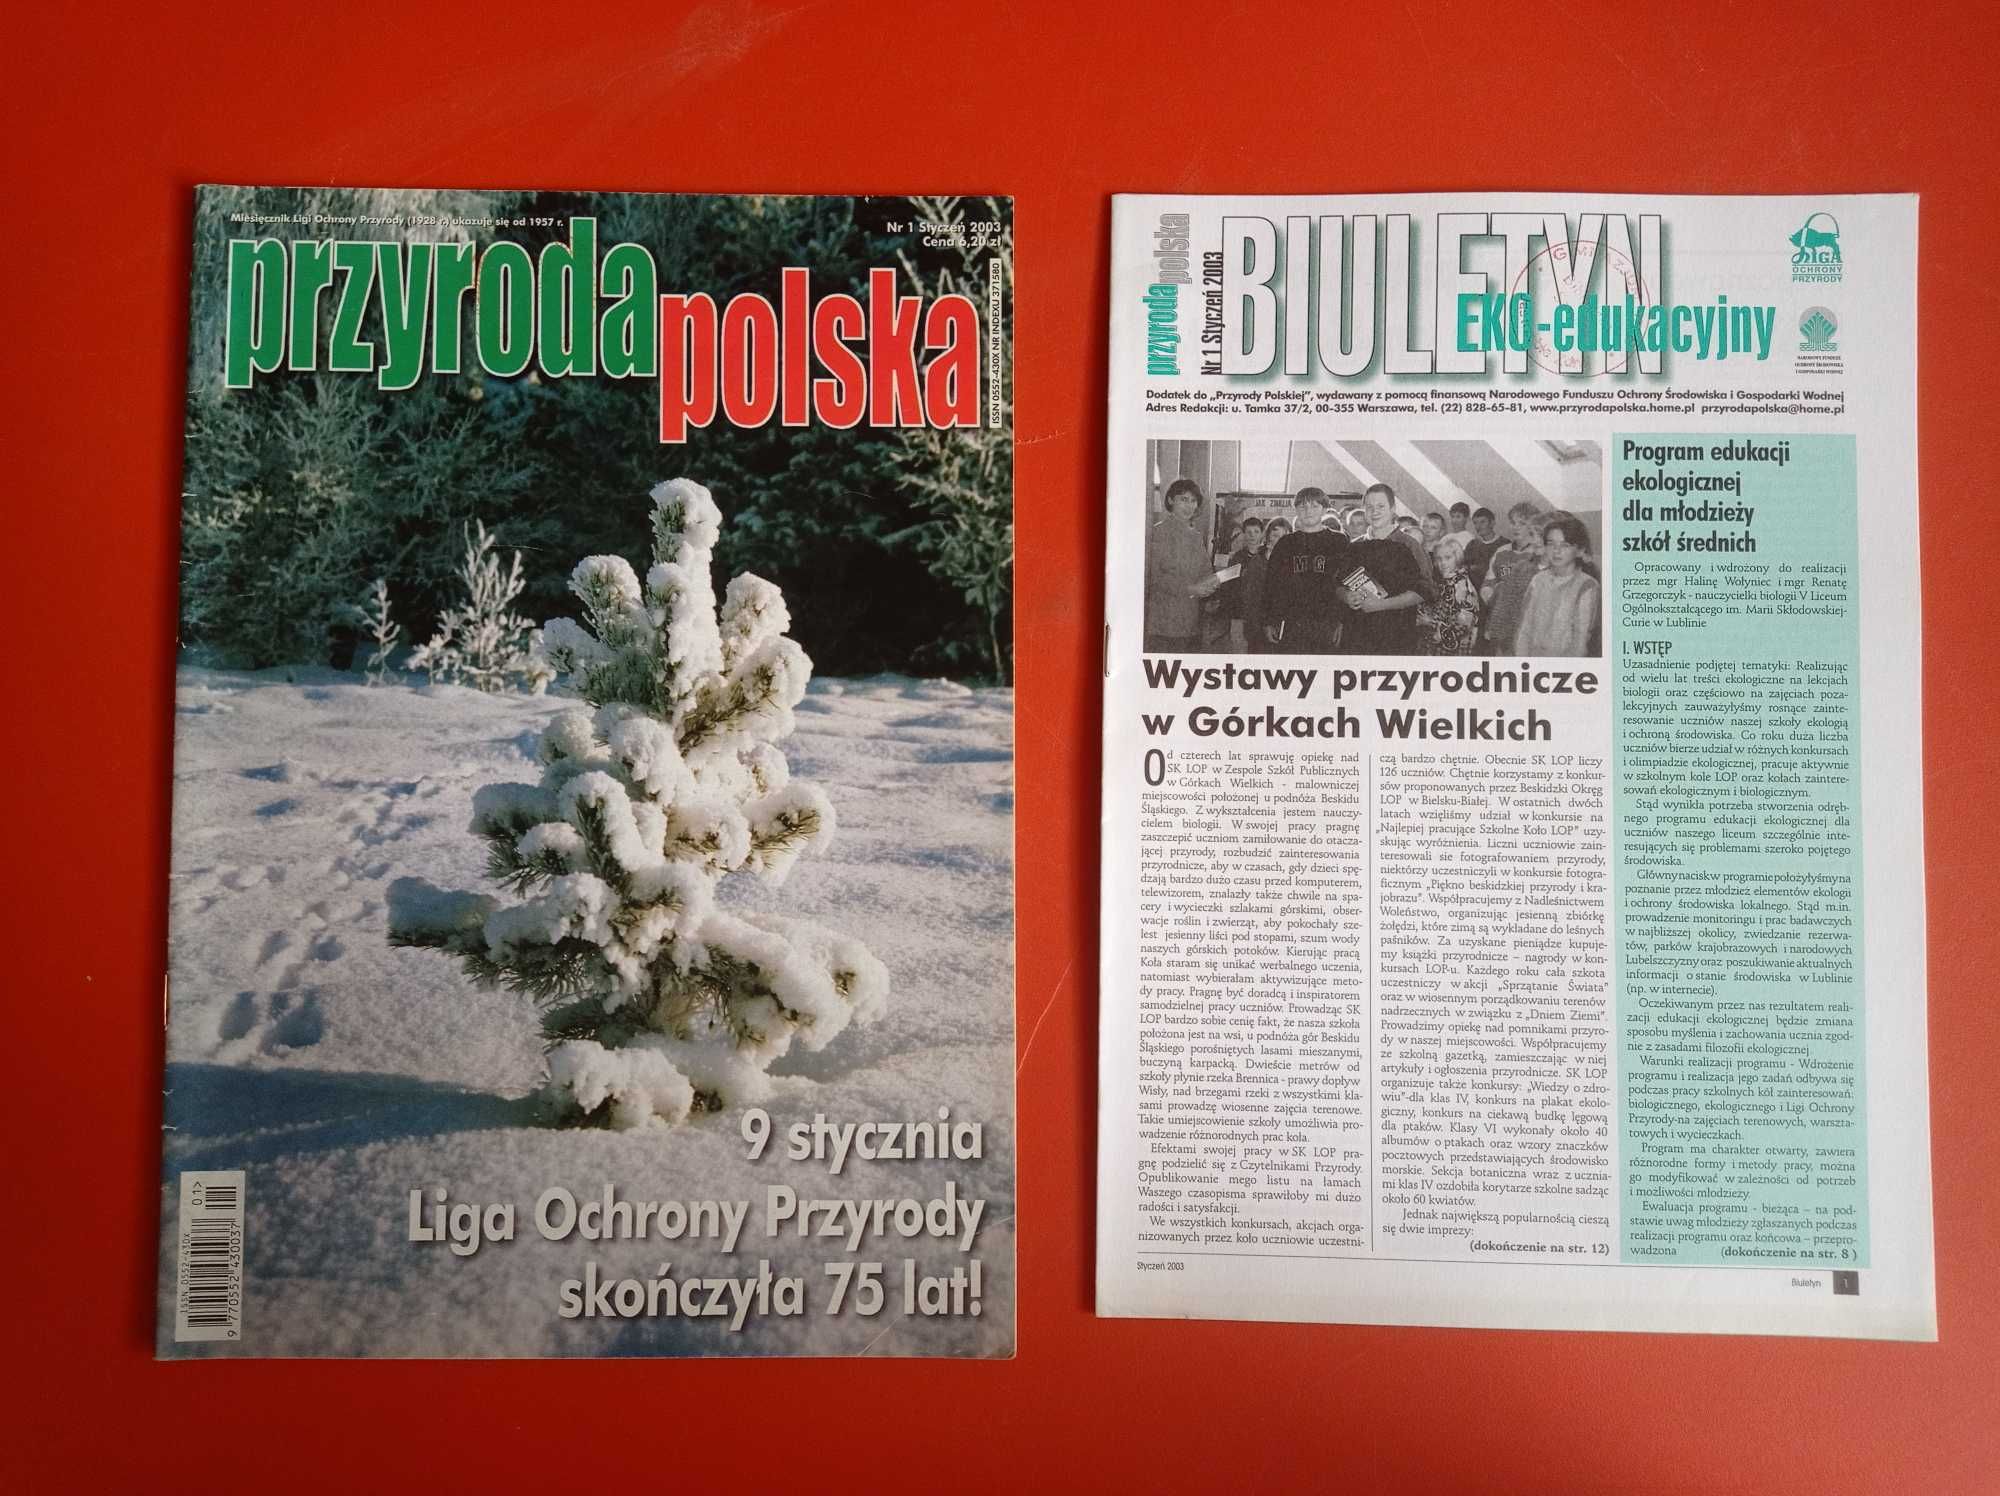 Przyroda polska nr 1/2003, styczeń 2003